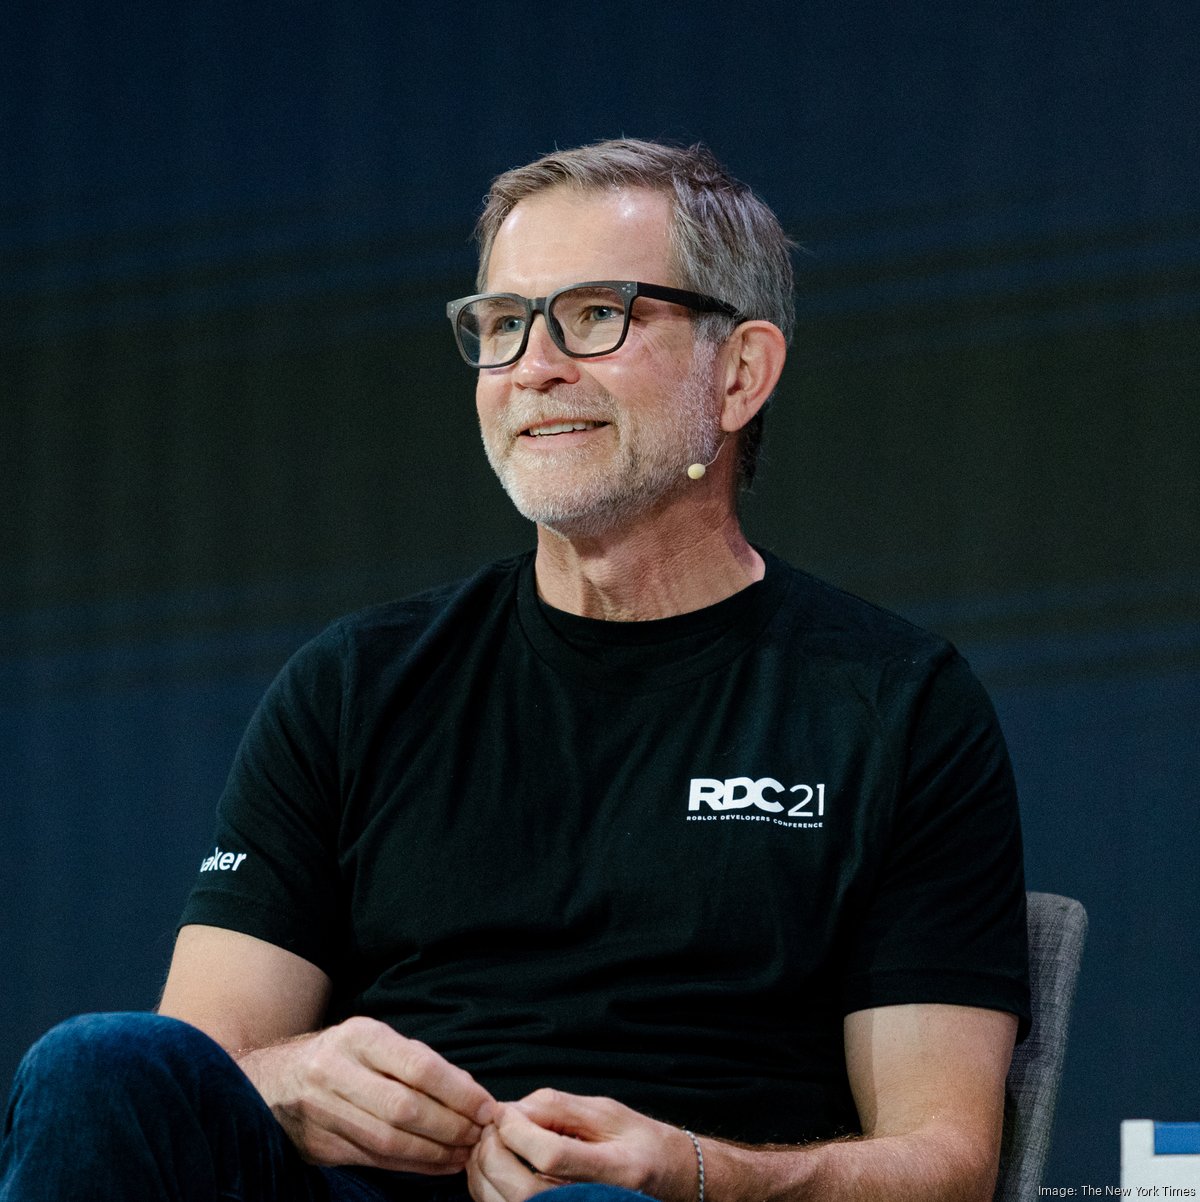 Roblox founder David Baszucki reveals major update coming soon - Dexerto